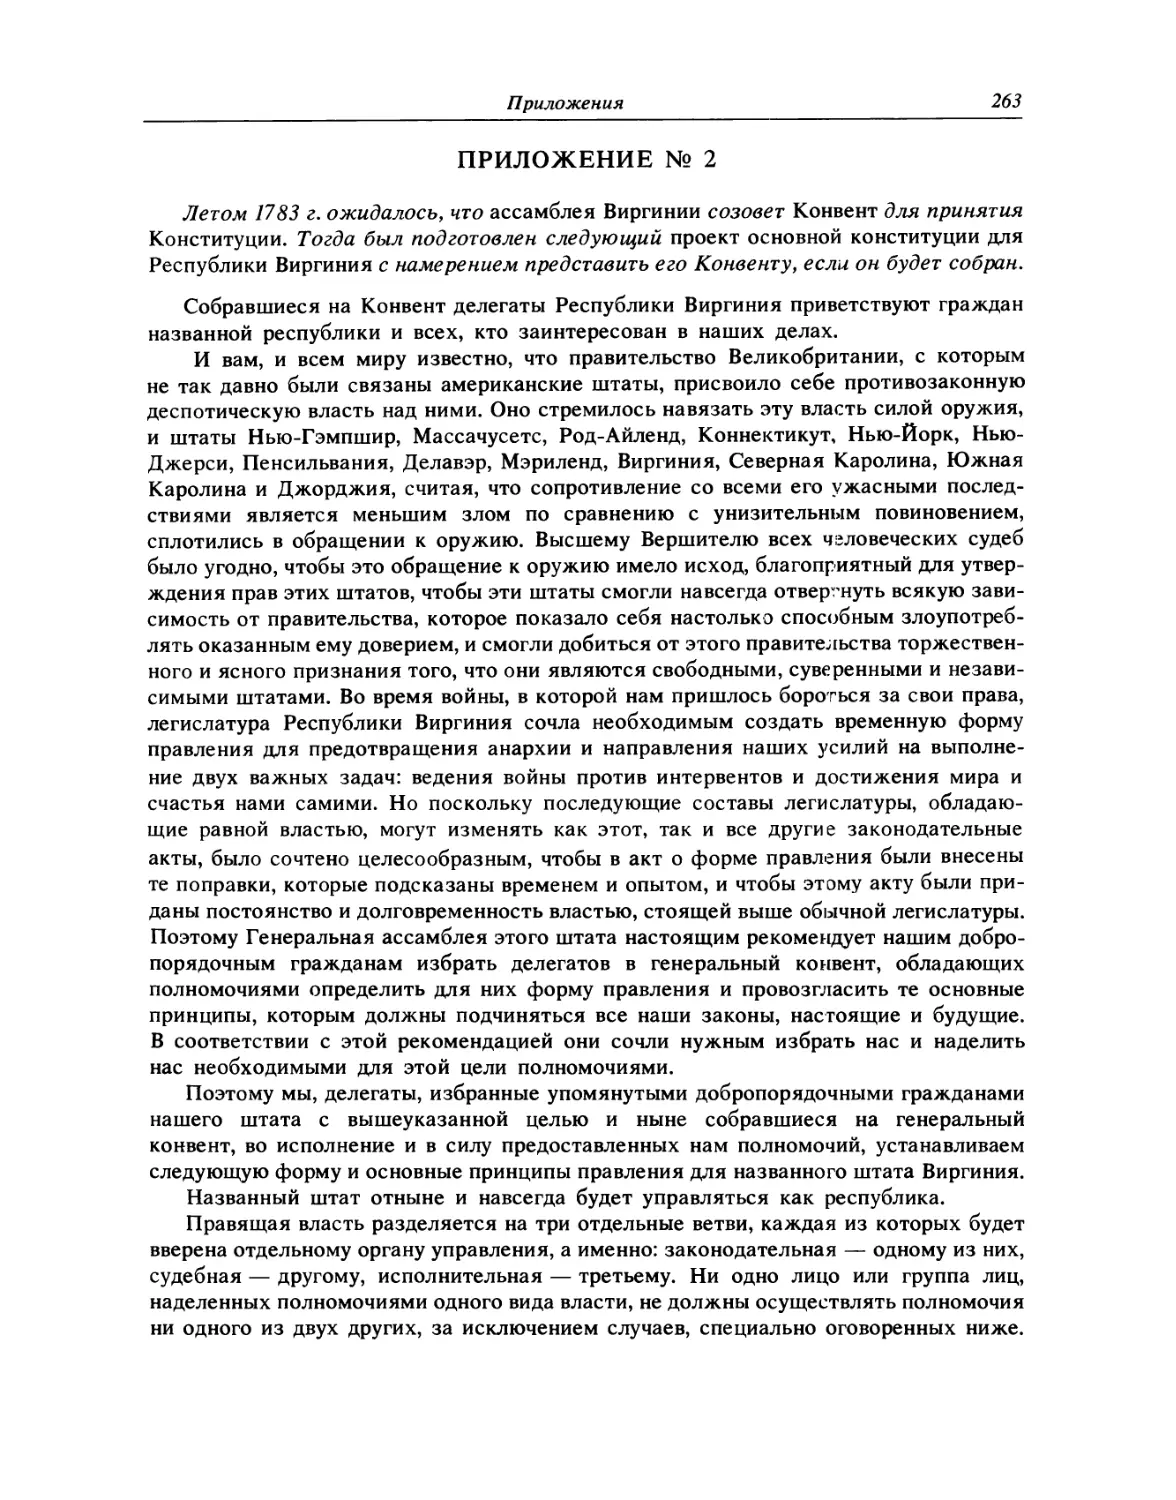 Приложение 2. Проект Основной Конституции Республики Виргиния